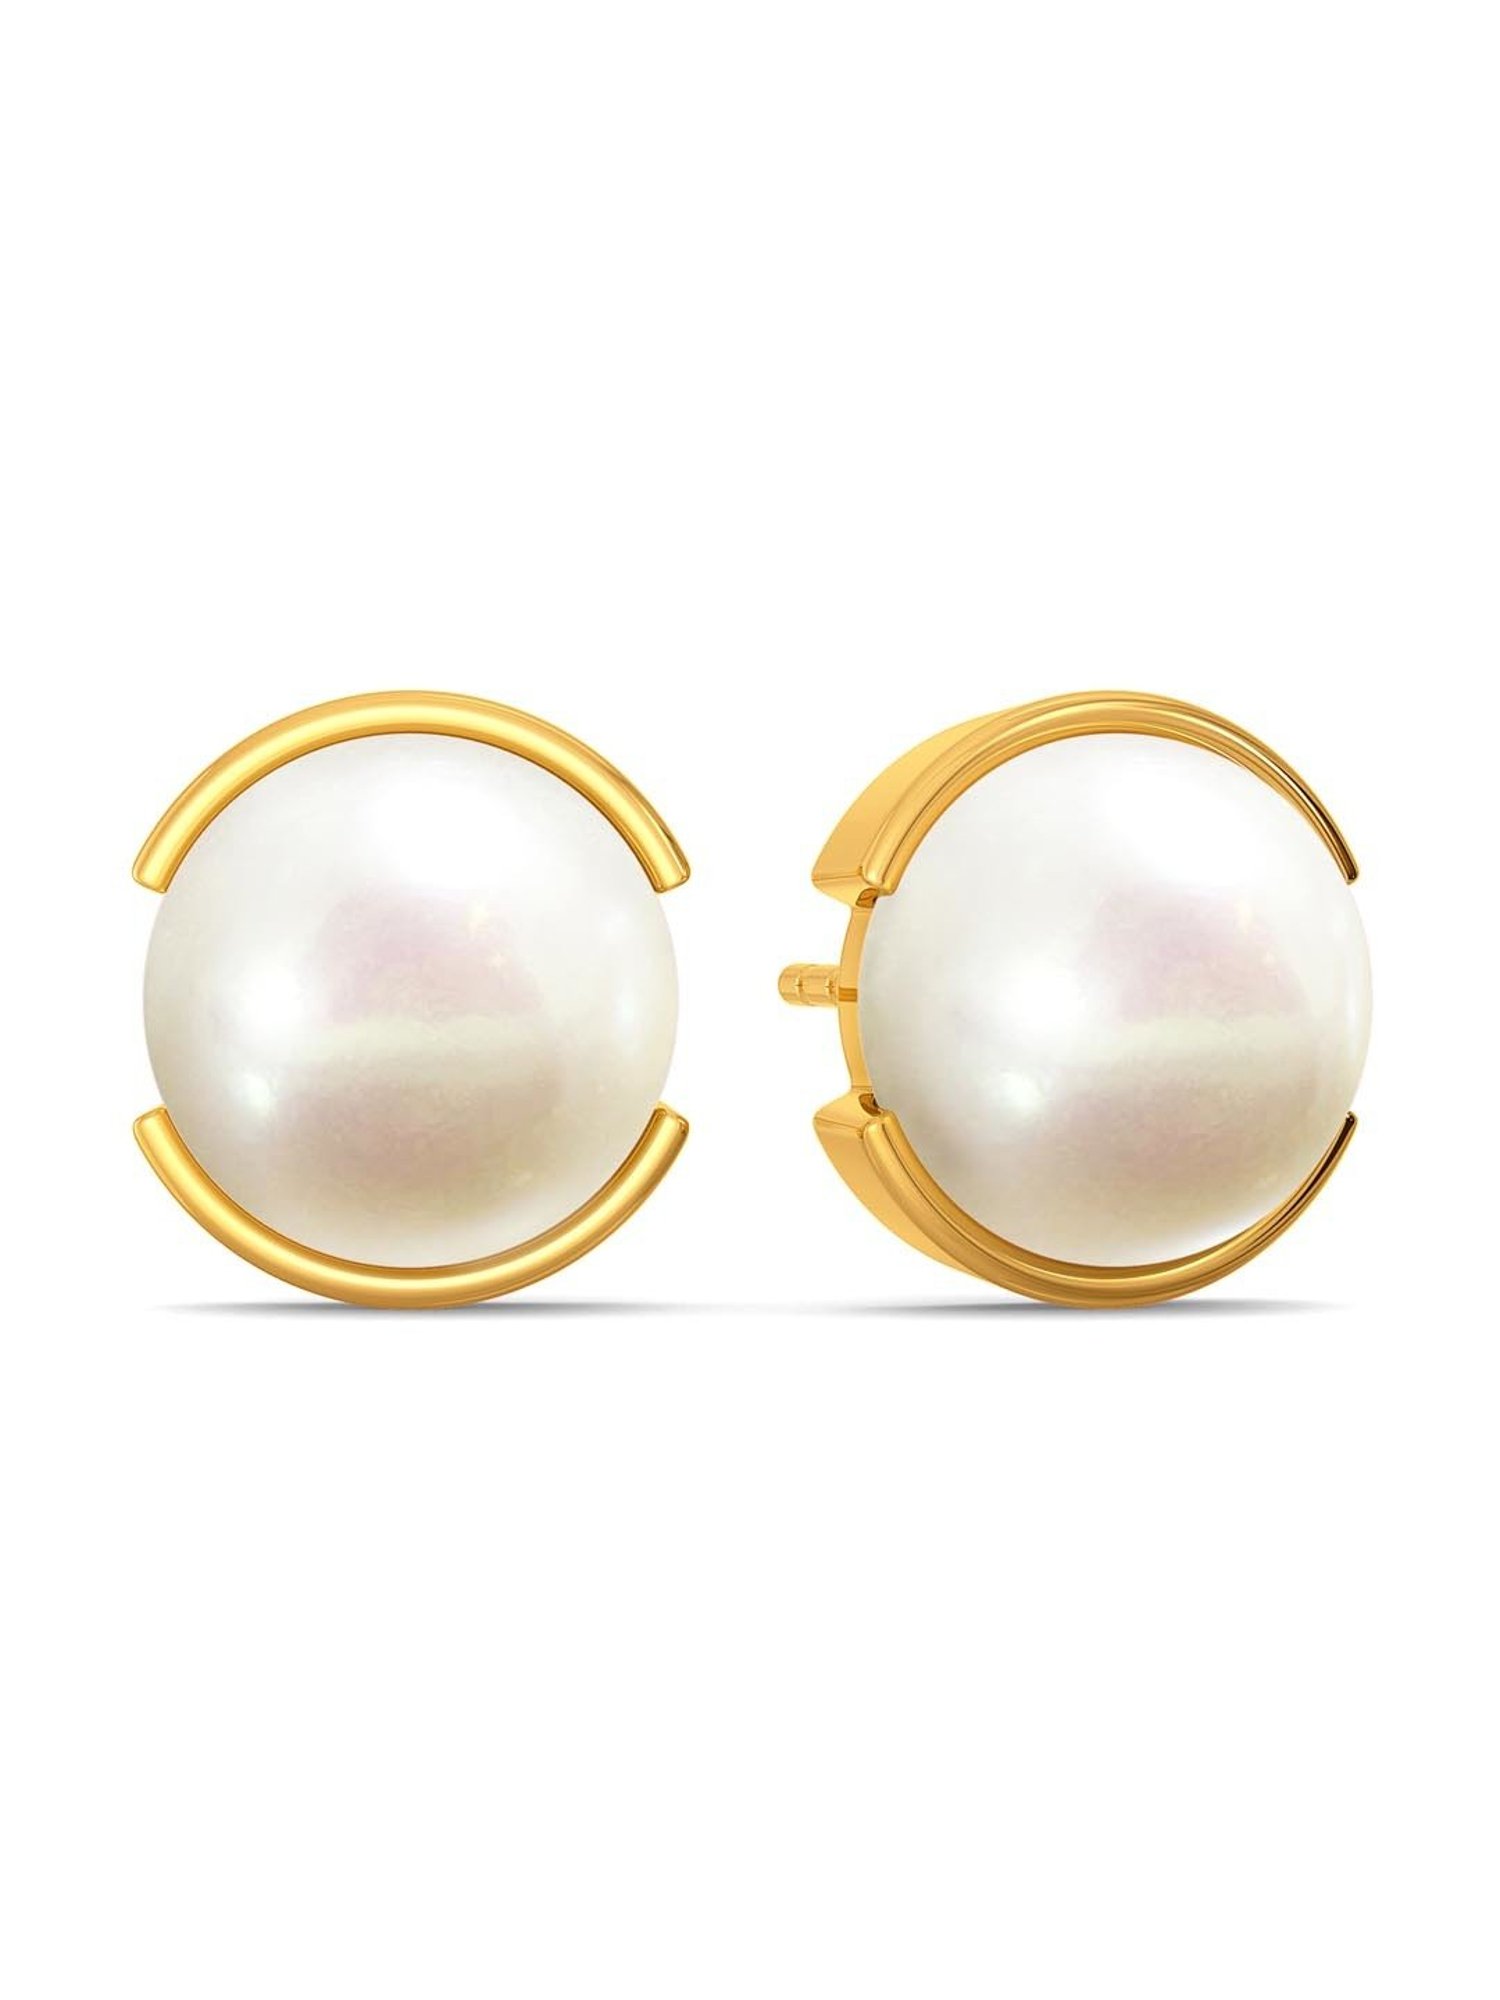 Buy White  GoldToned Earrings for Women by Sohi Online  Ajiocom